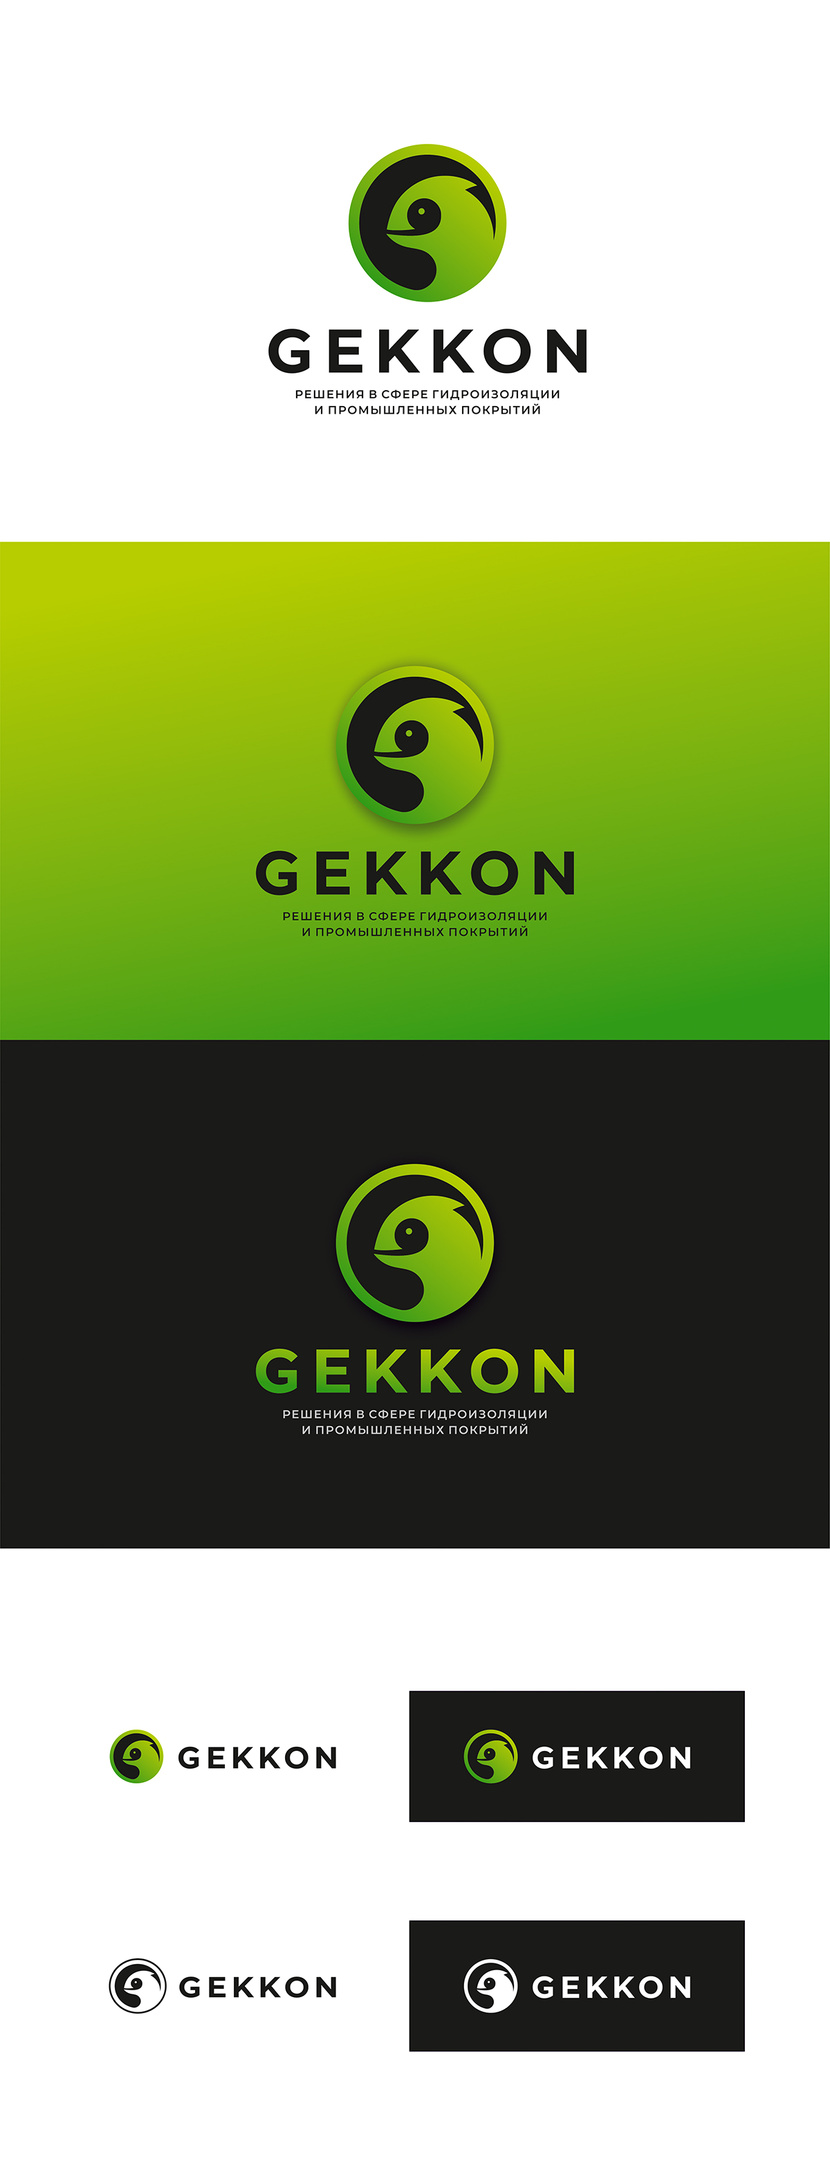 Логотип для производства полиуретановых материалов марки "Gekkon"